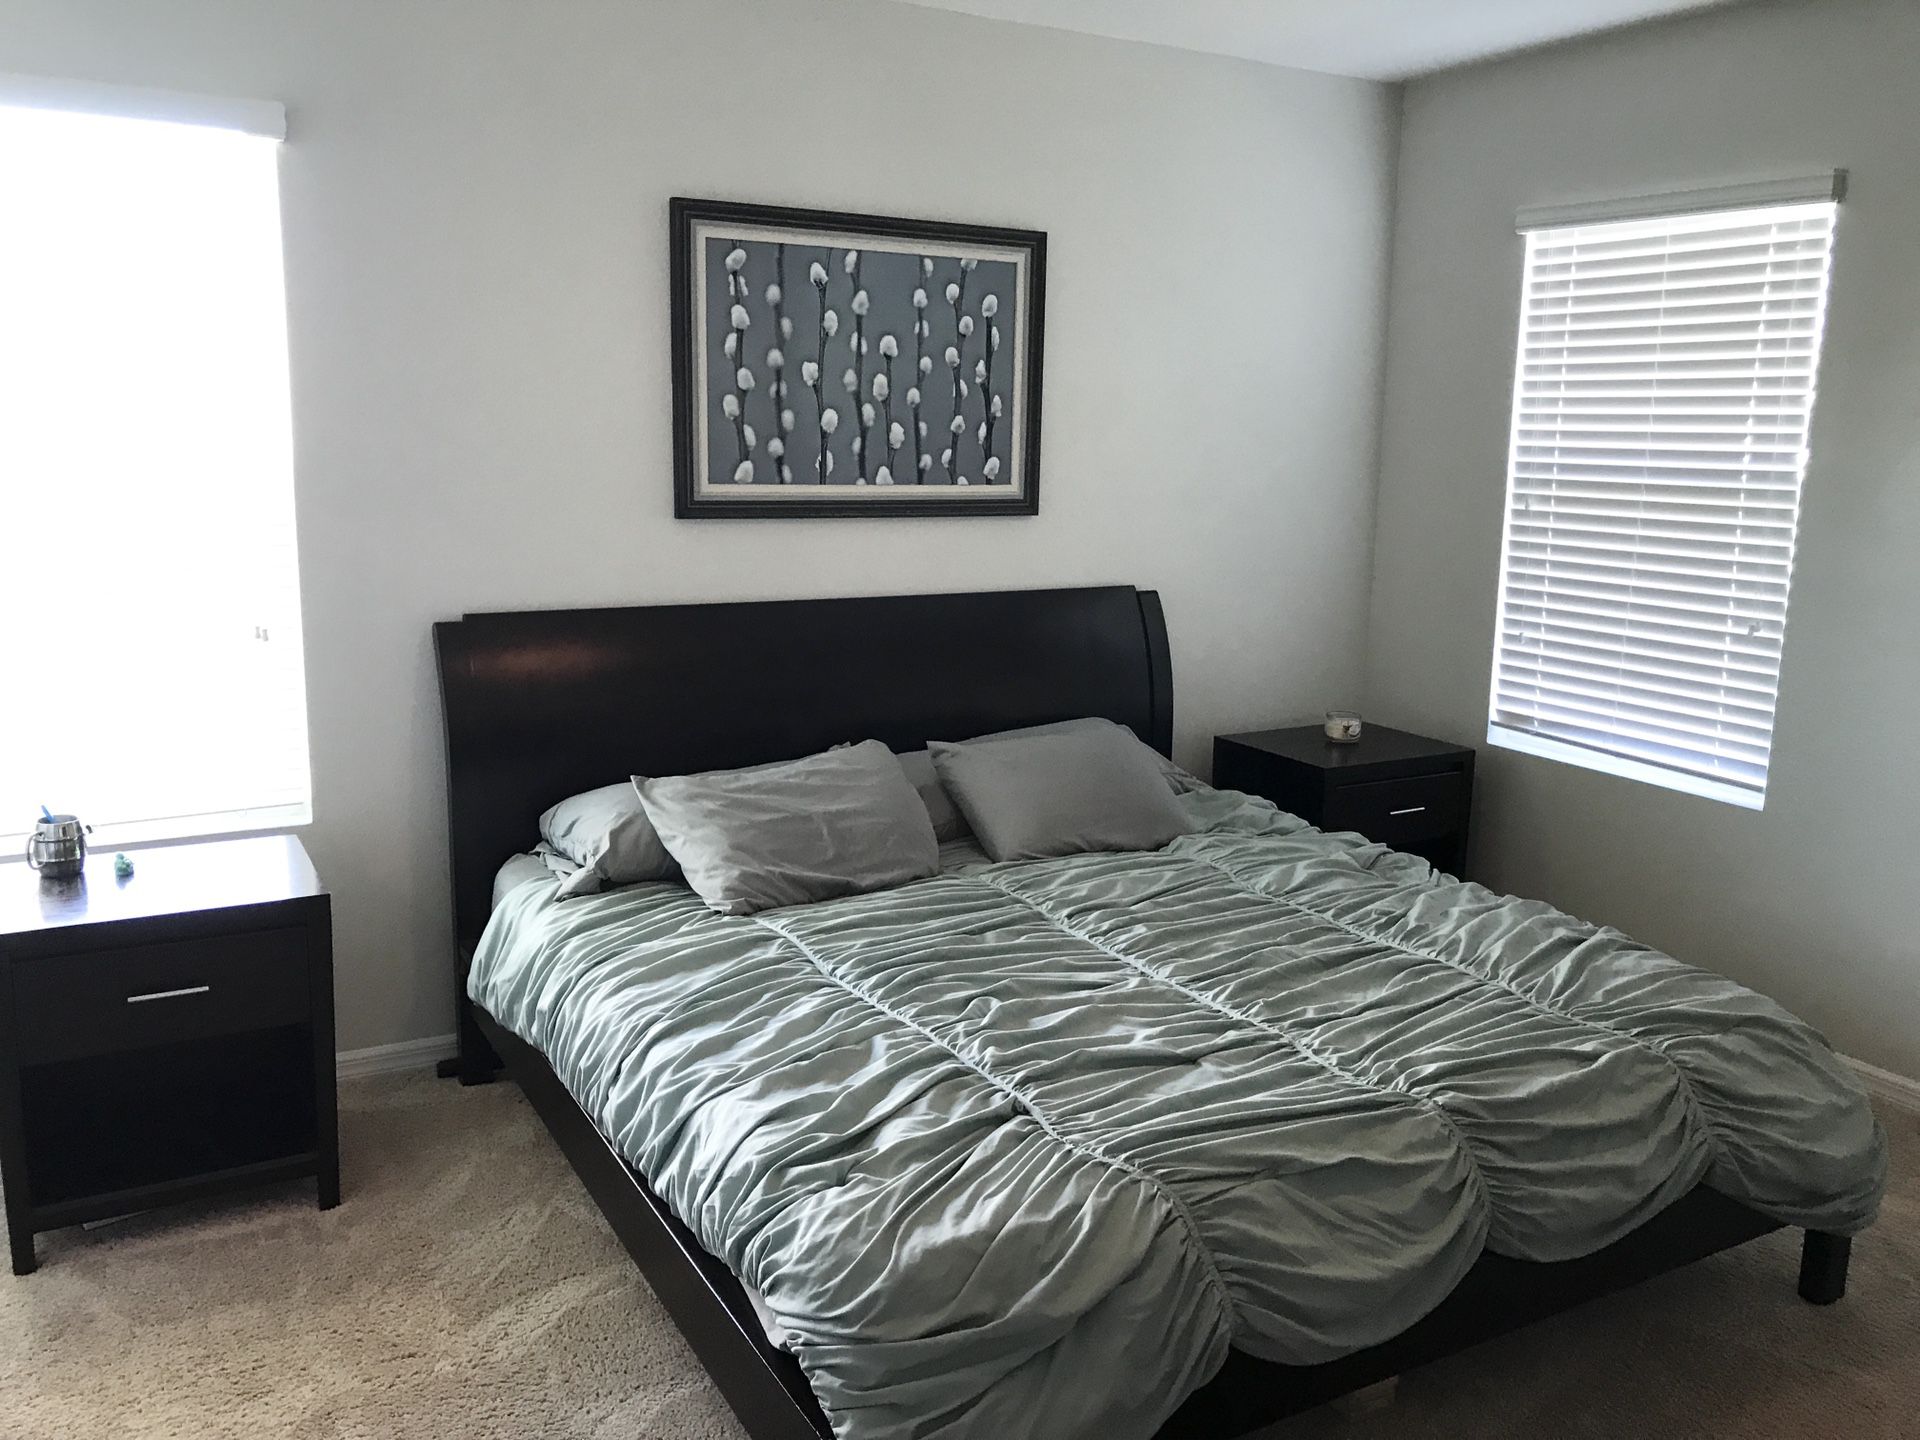 Bedroom furniture set - king size